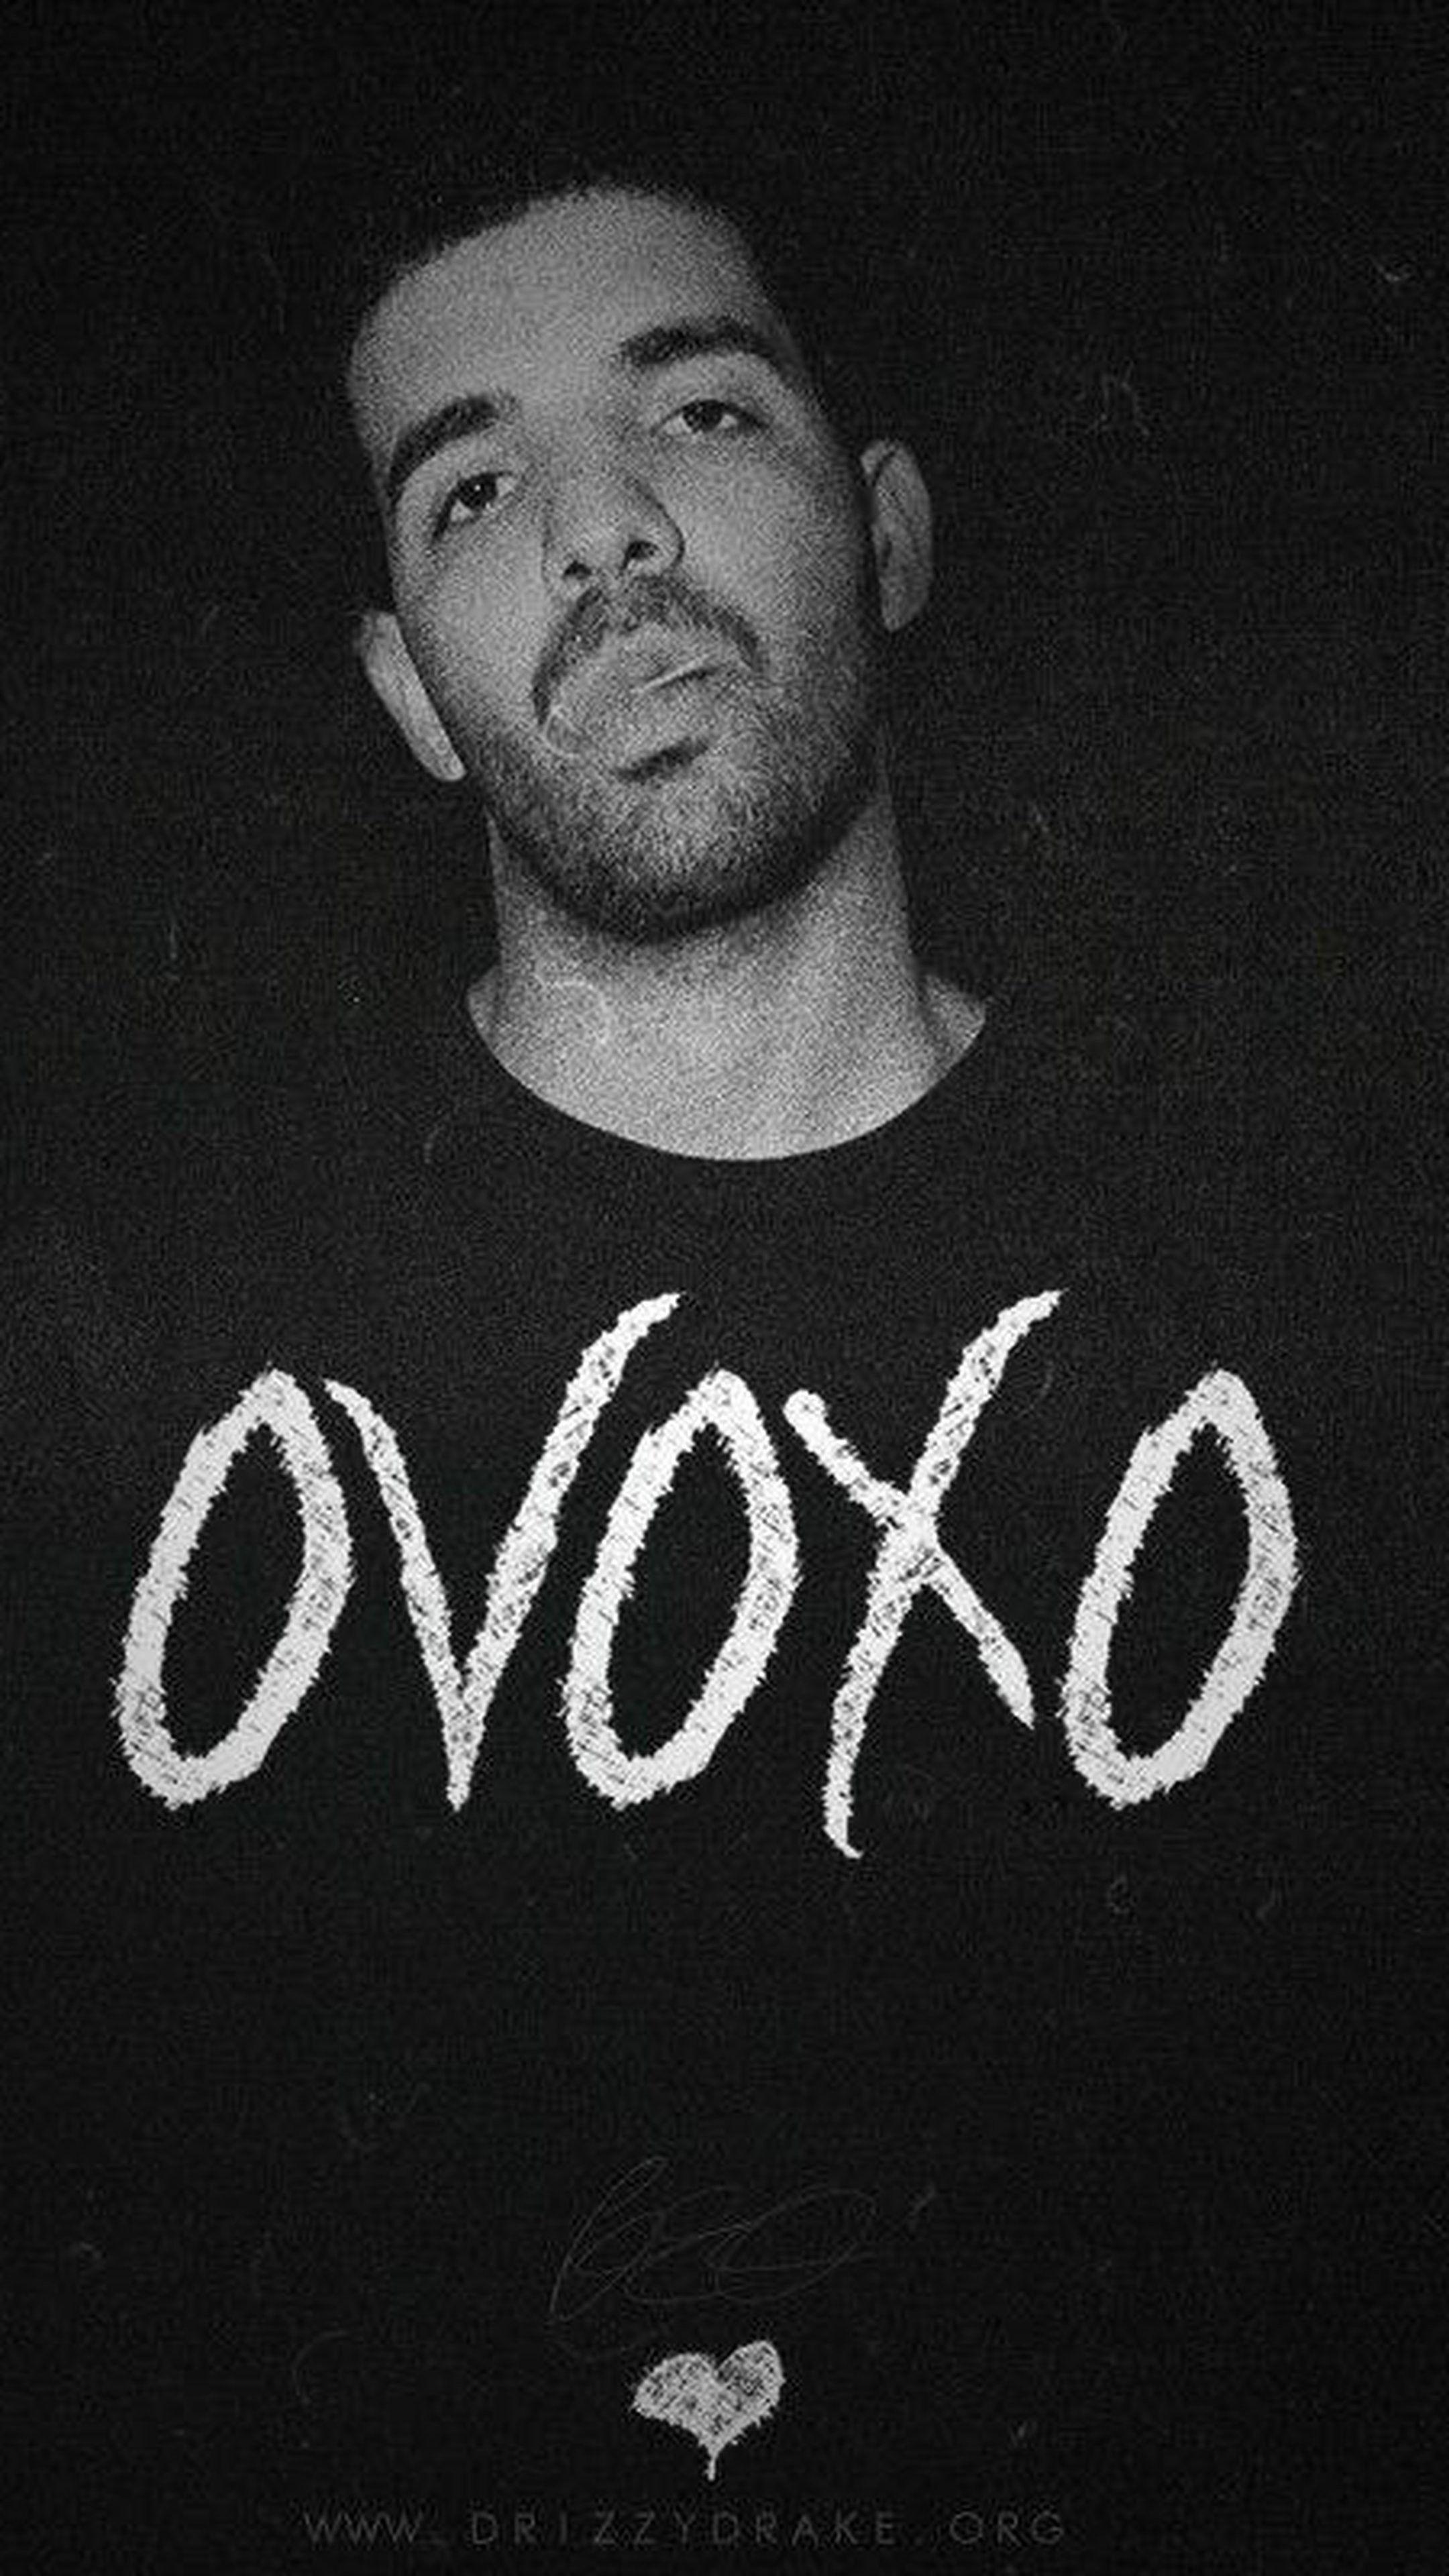 Drake Black and White Logo - Drake Ovo Wallpaper